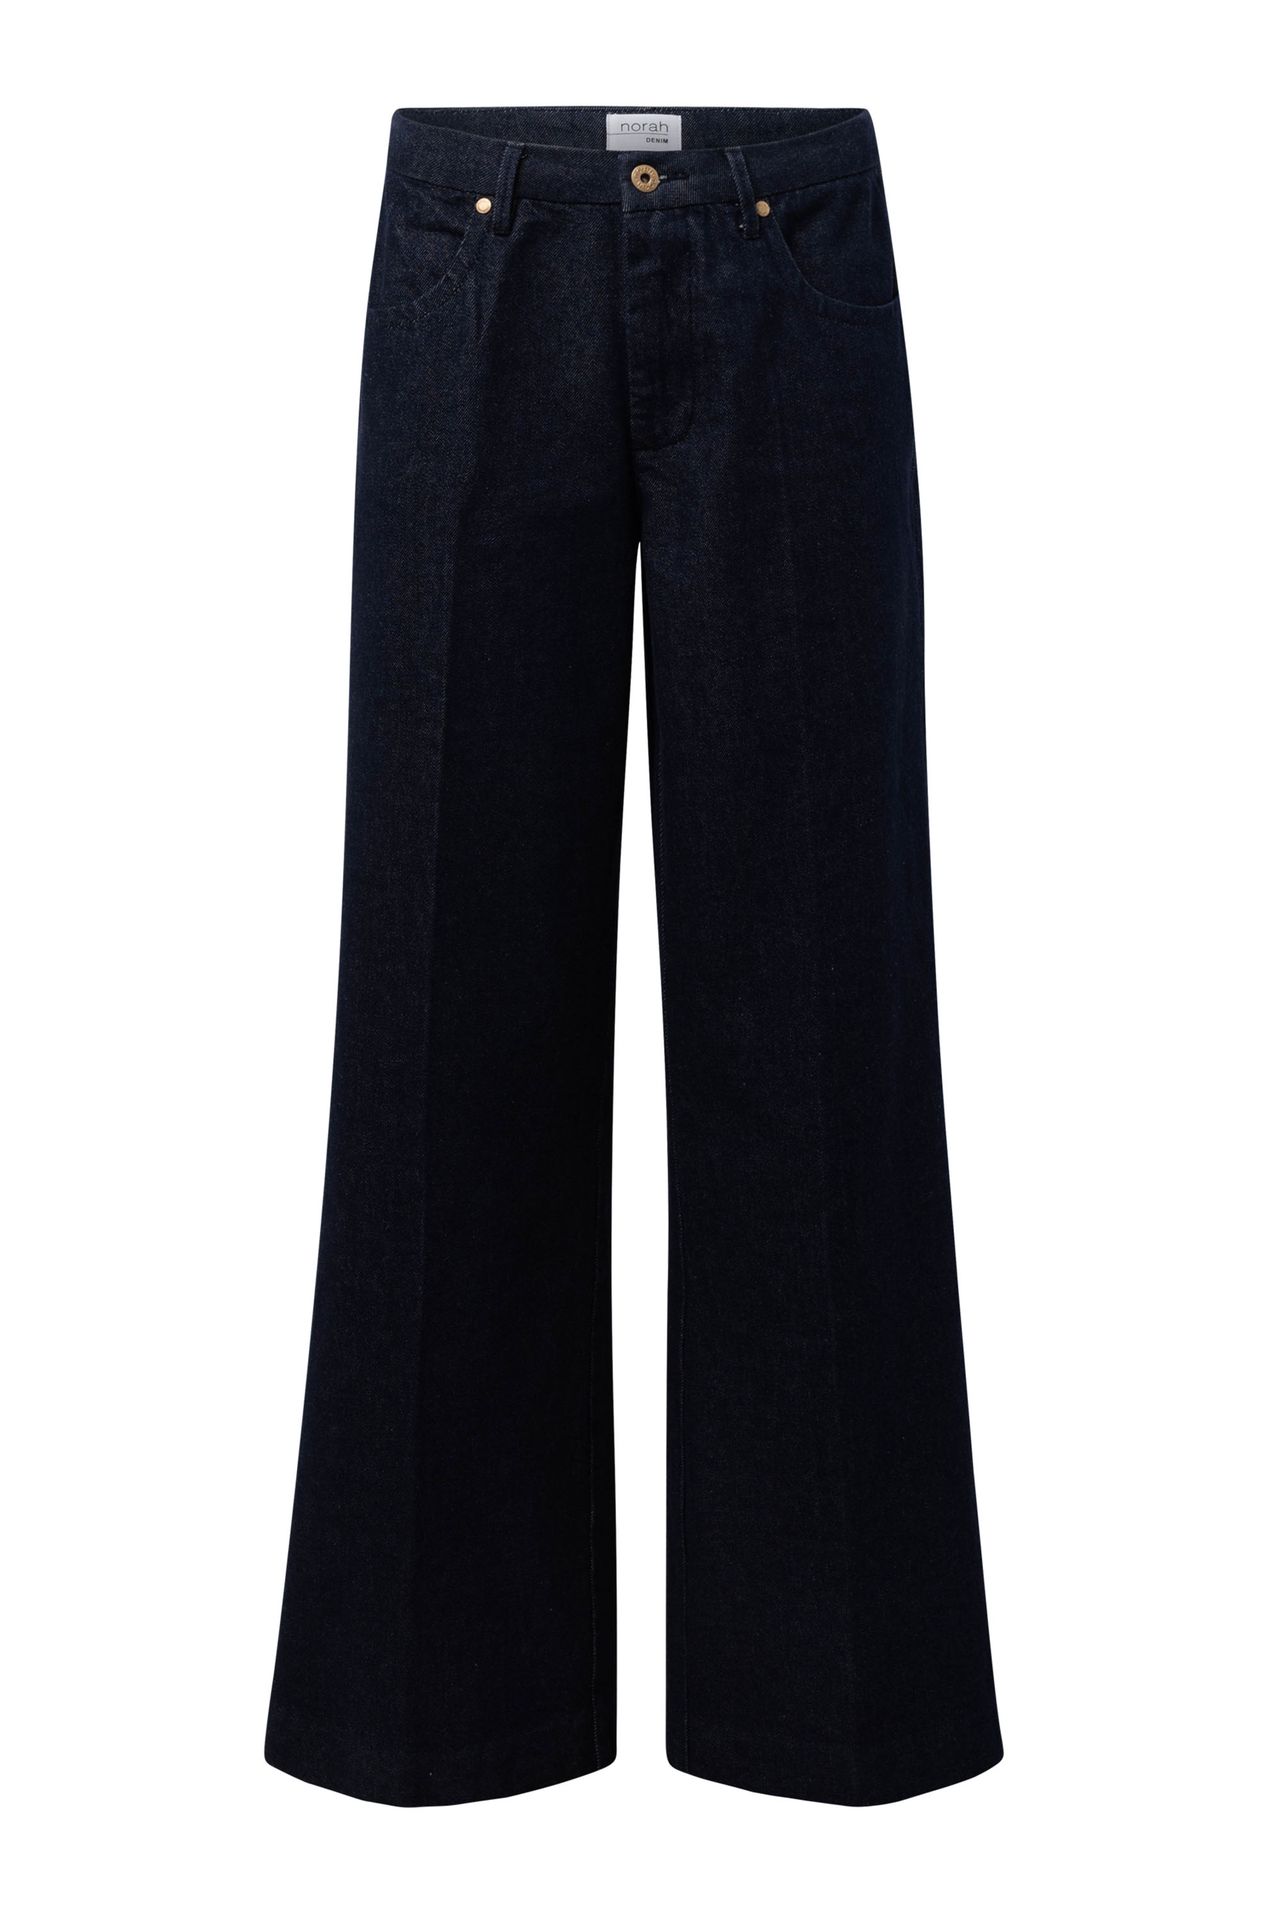  Donkere denim jeans denim blue 214657-472-46